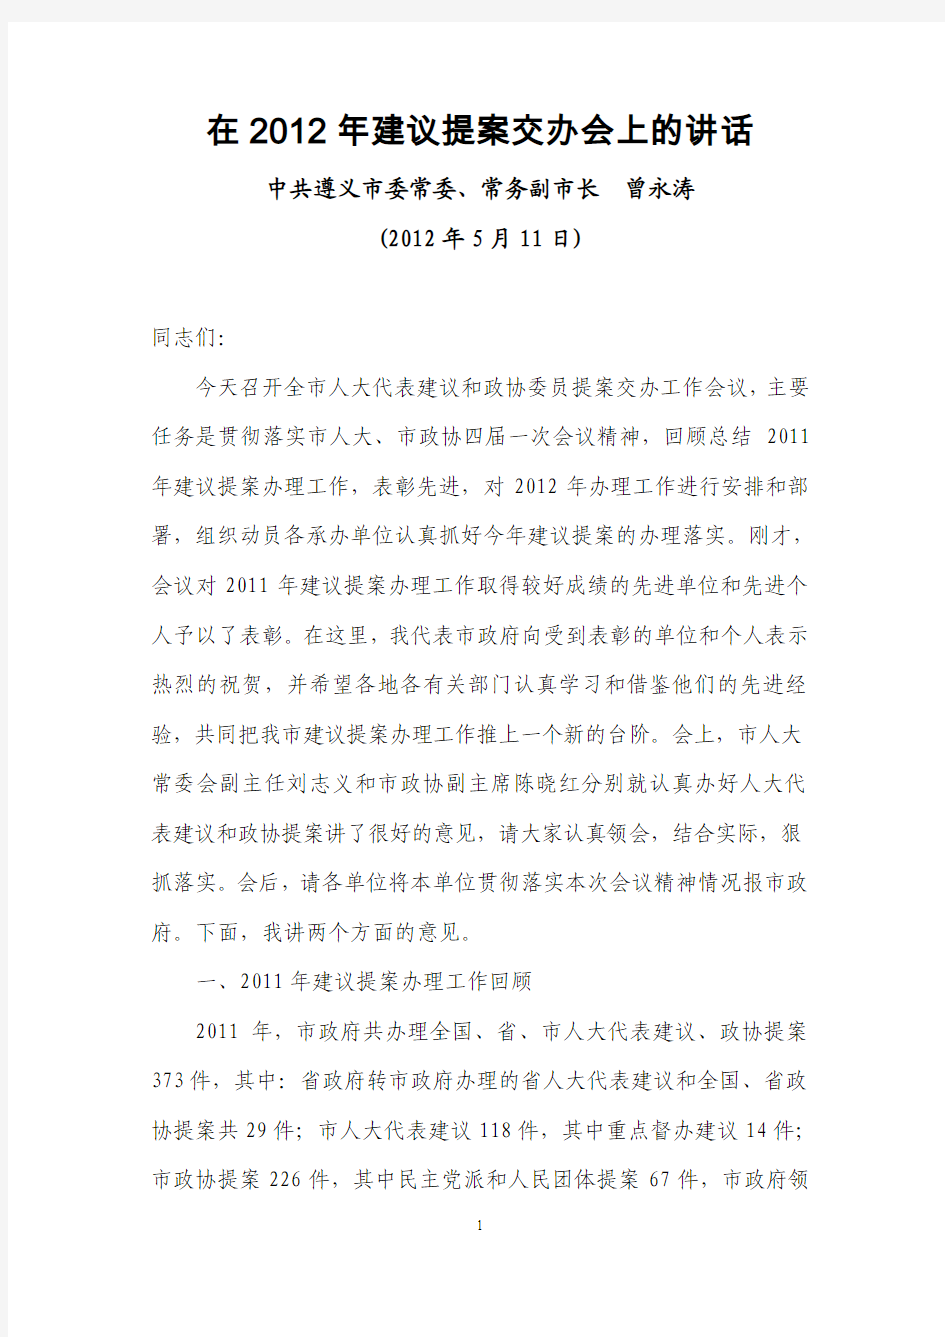 遵义市常务副市长曾永涛2012年5月11日在2012年建议提案交办会上的讲话